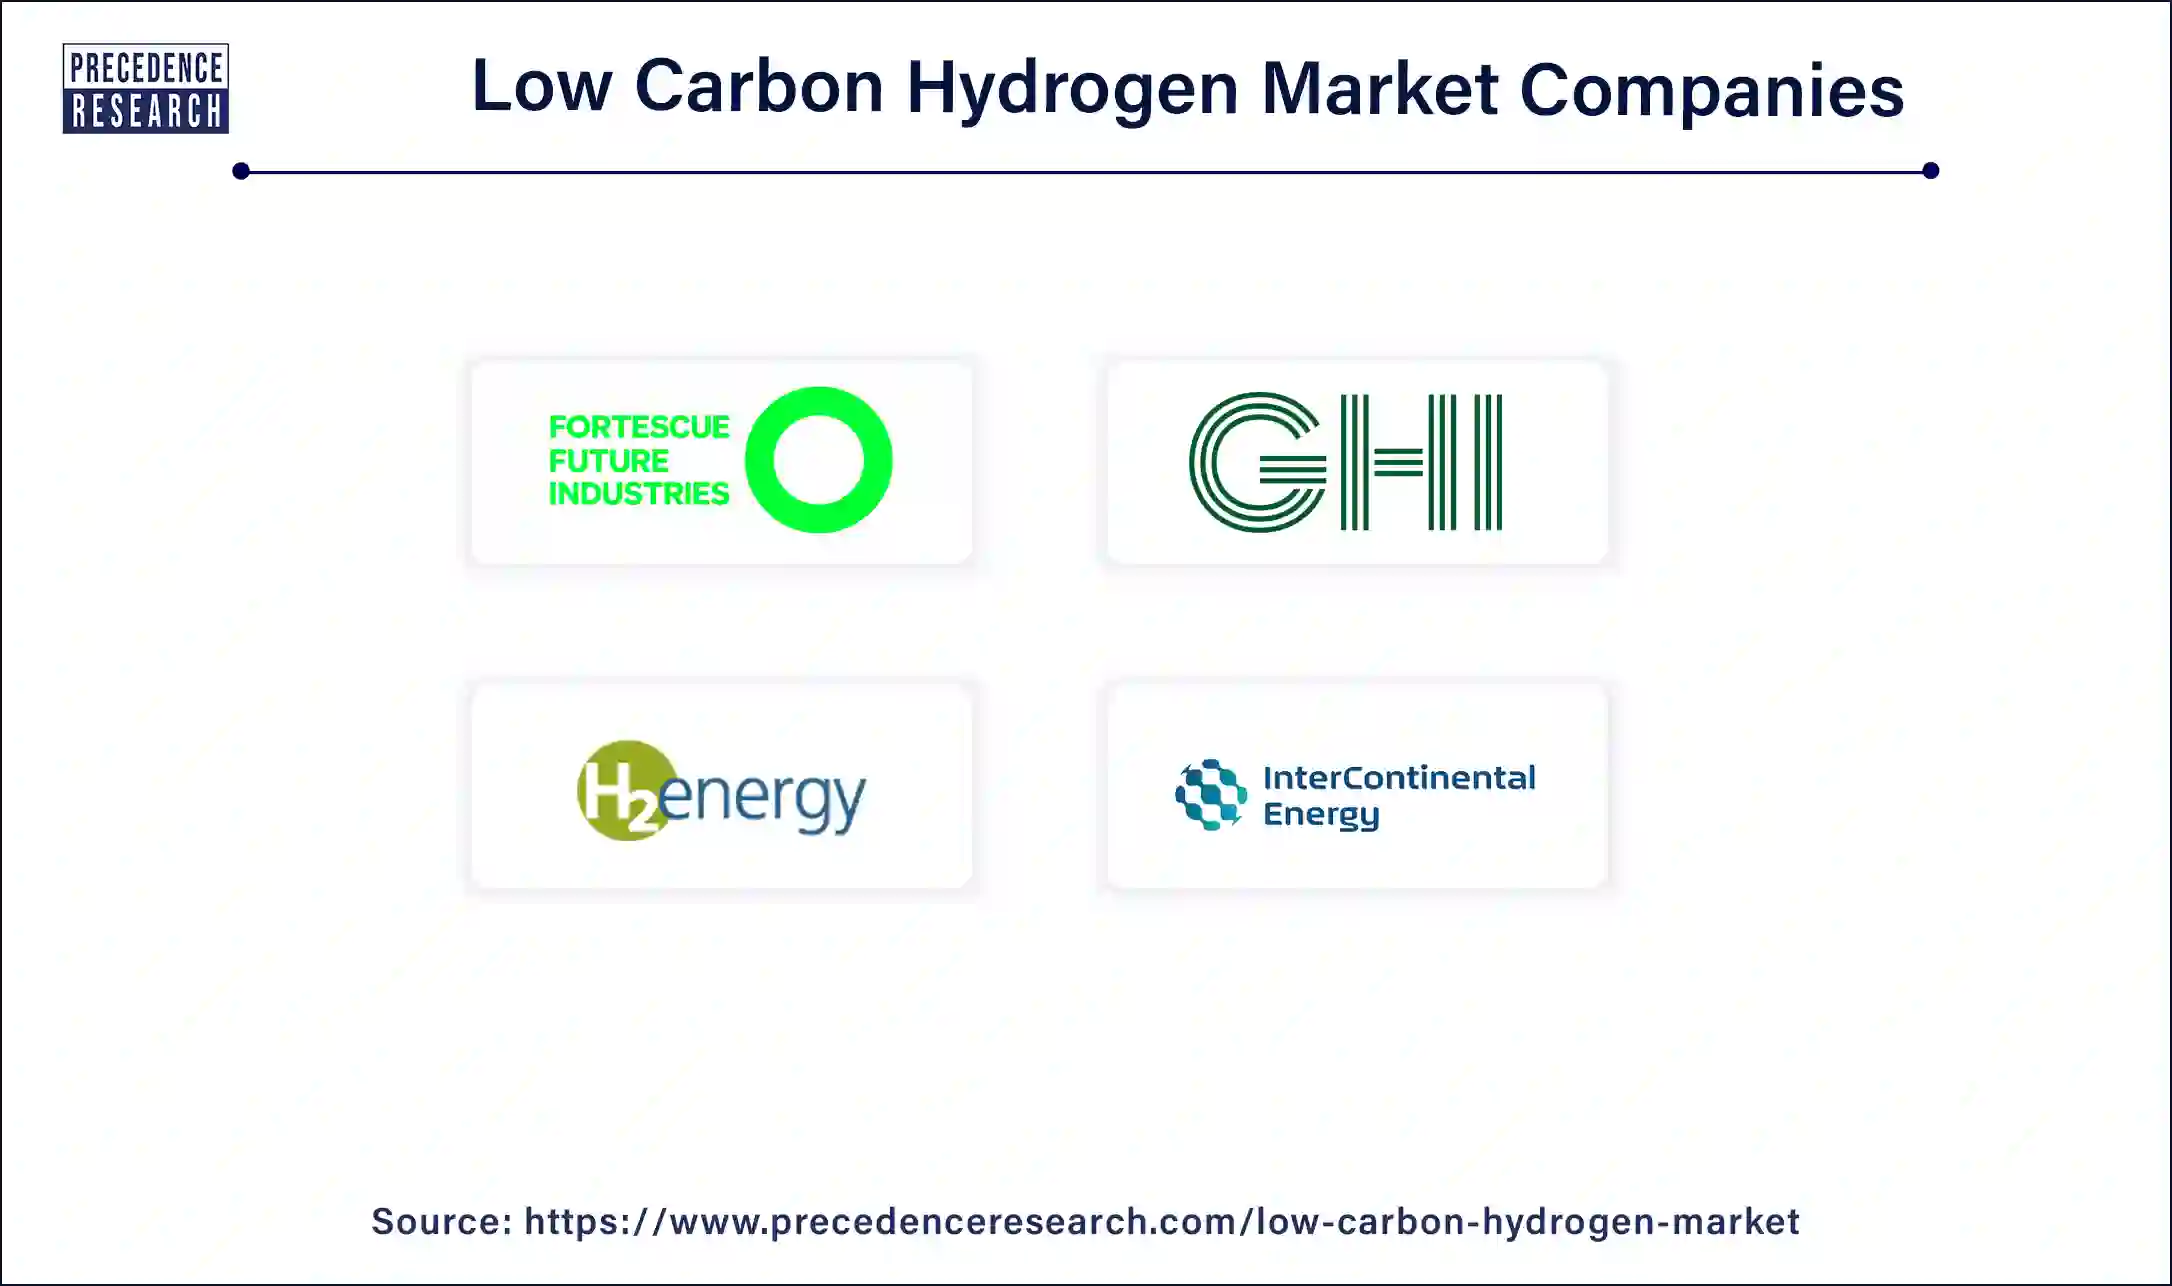 Low Carbon Hydrogen Companies